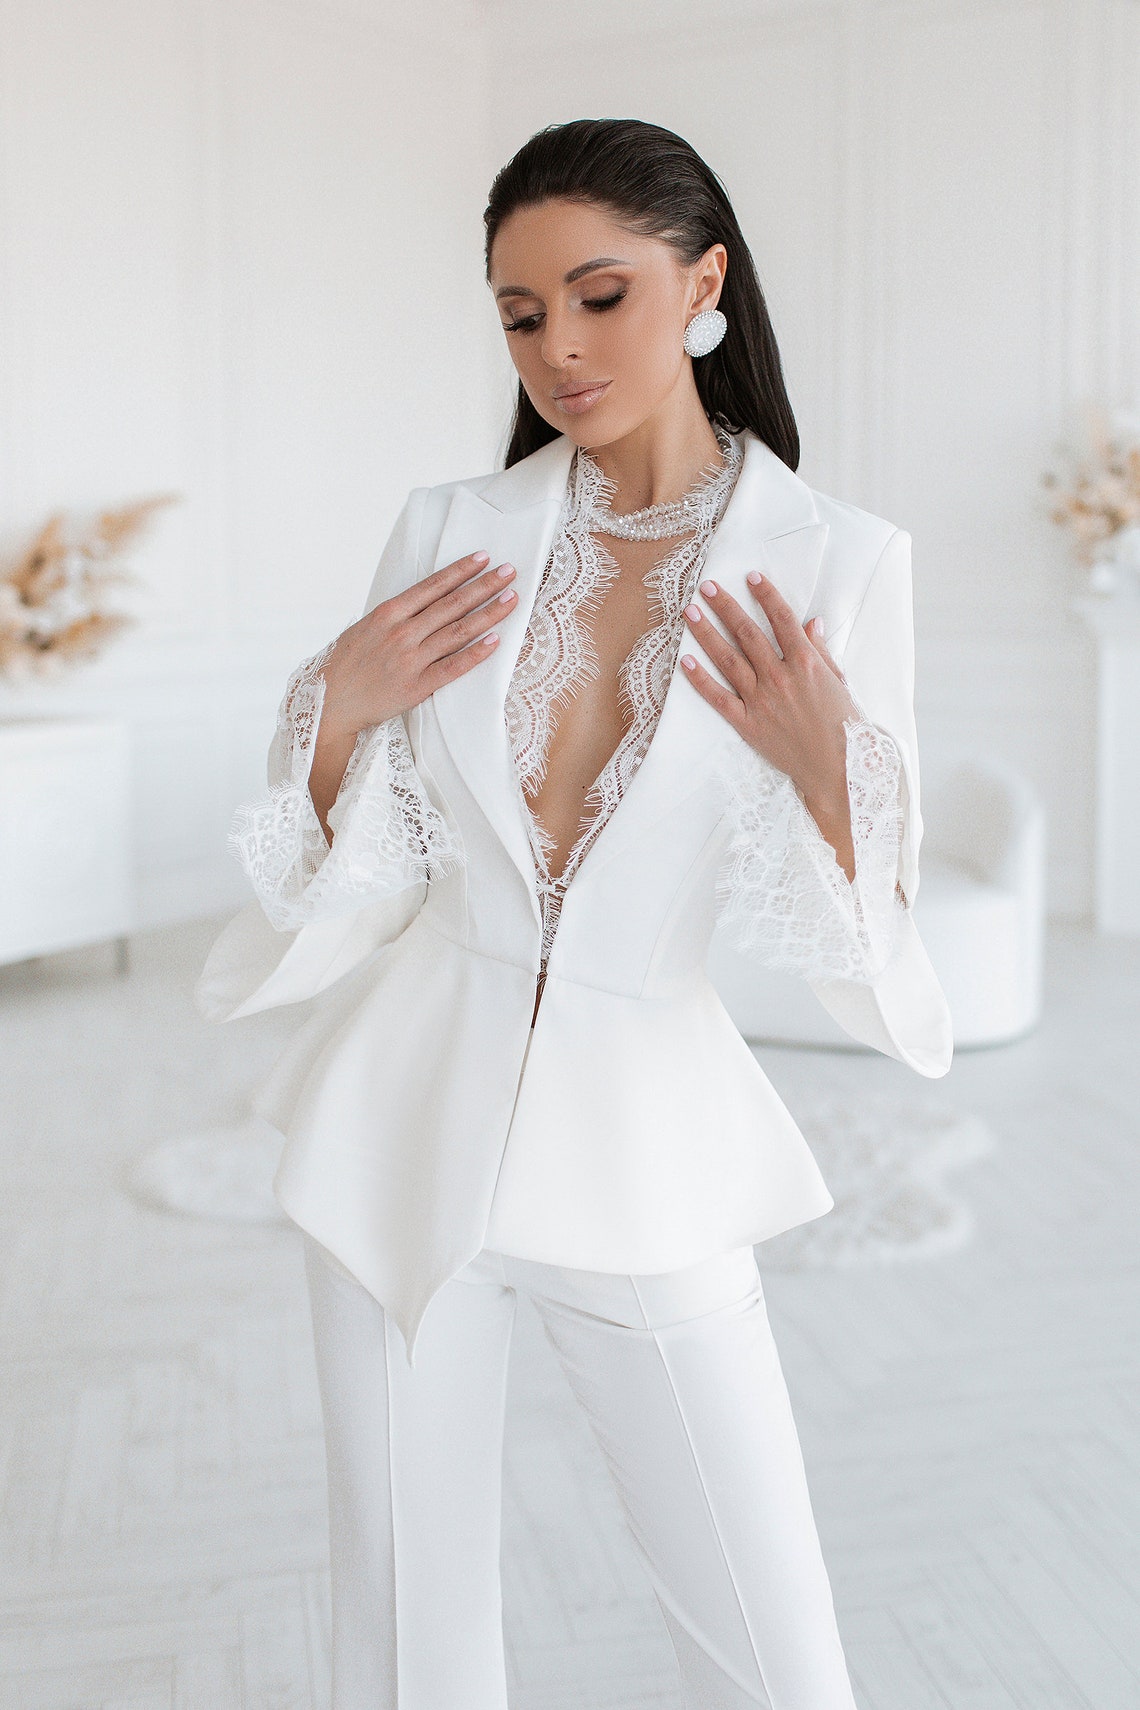 White Pantsuit for Women White Formal Suit Set for Women - Etsy